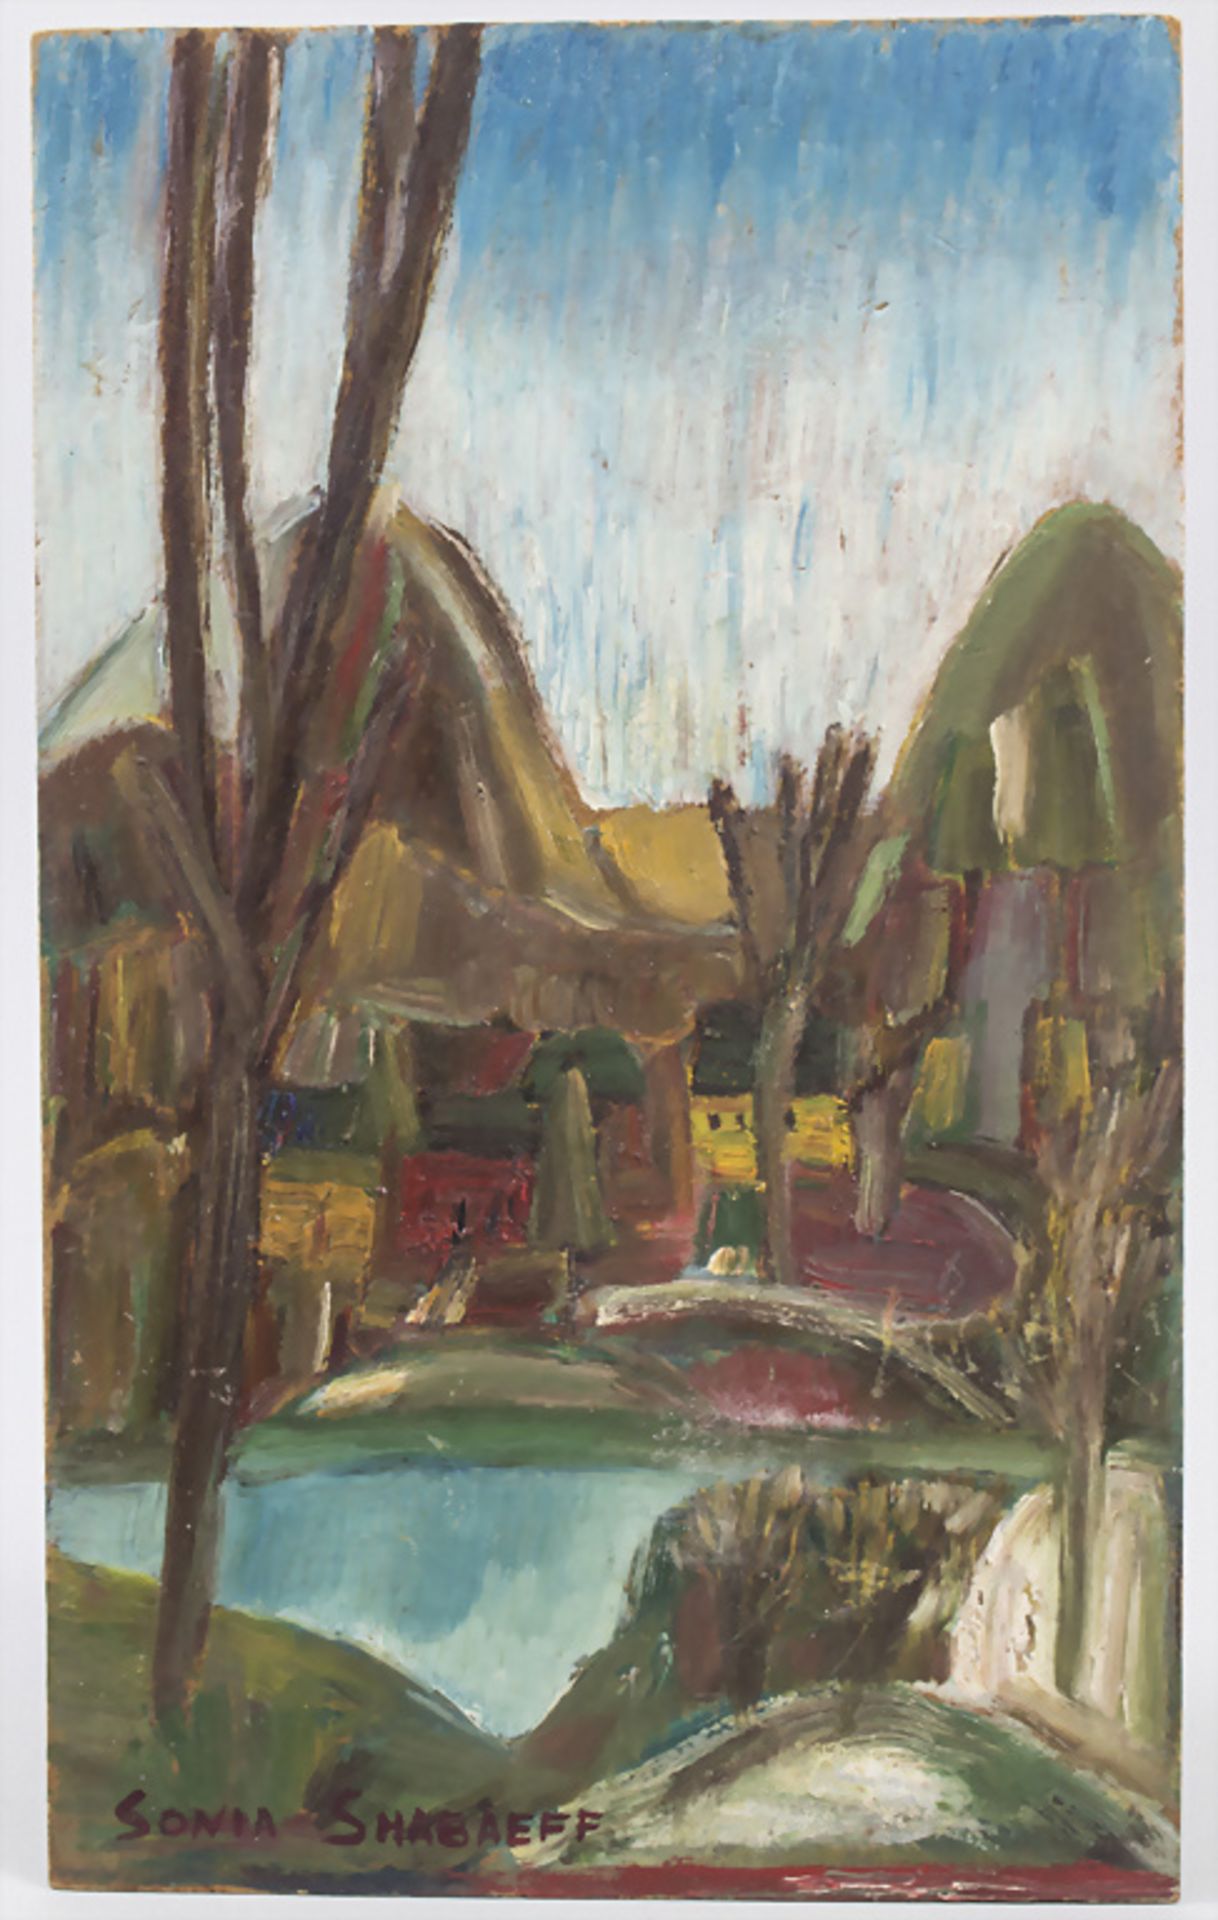 Sonia Shabaeff (20. Jh.), 'Uferlandschaft mit Häusern' / 'Landscape with houses'